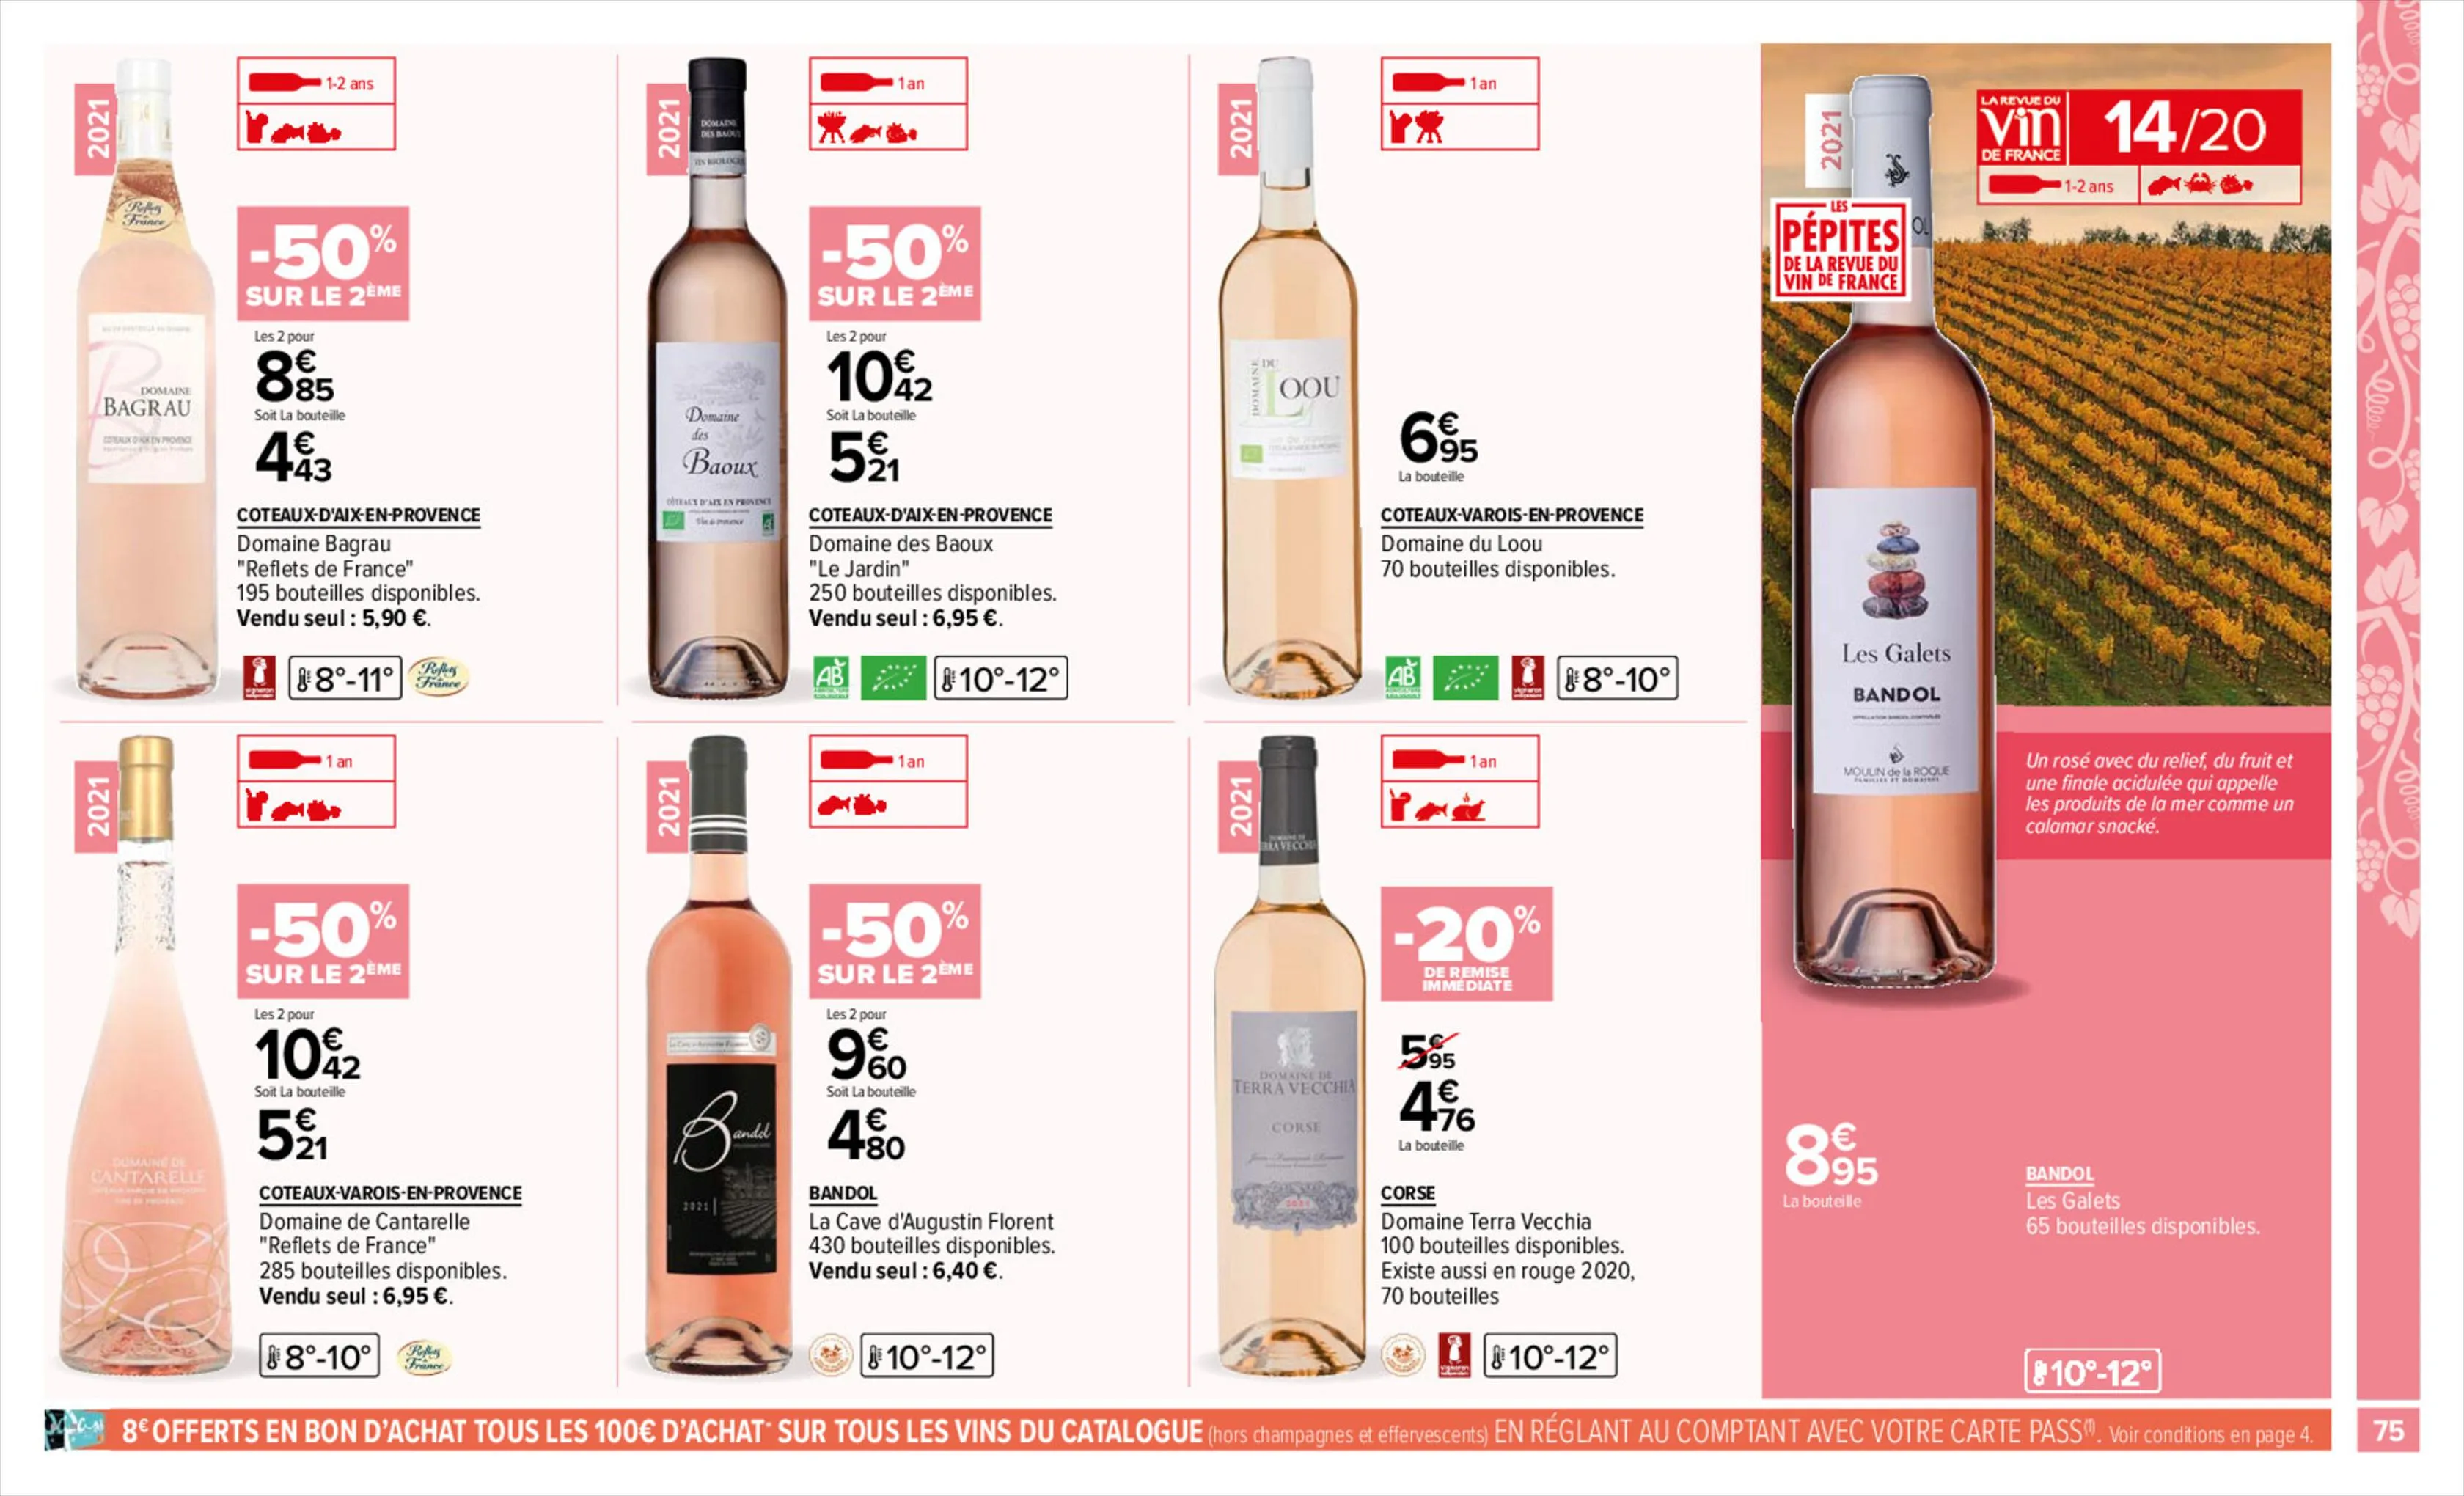 Catalogue Foire aux vins, page 00075